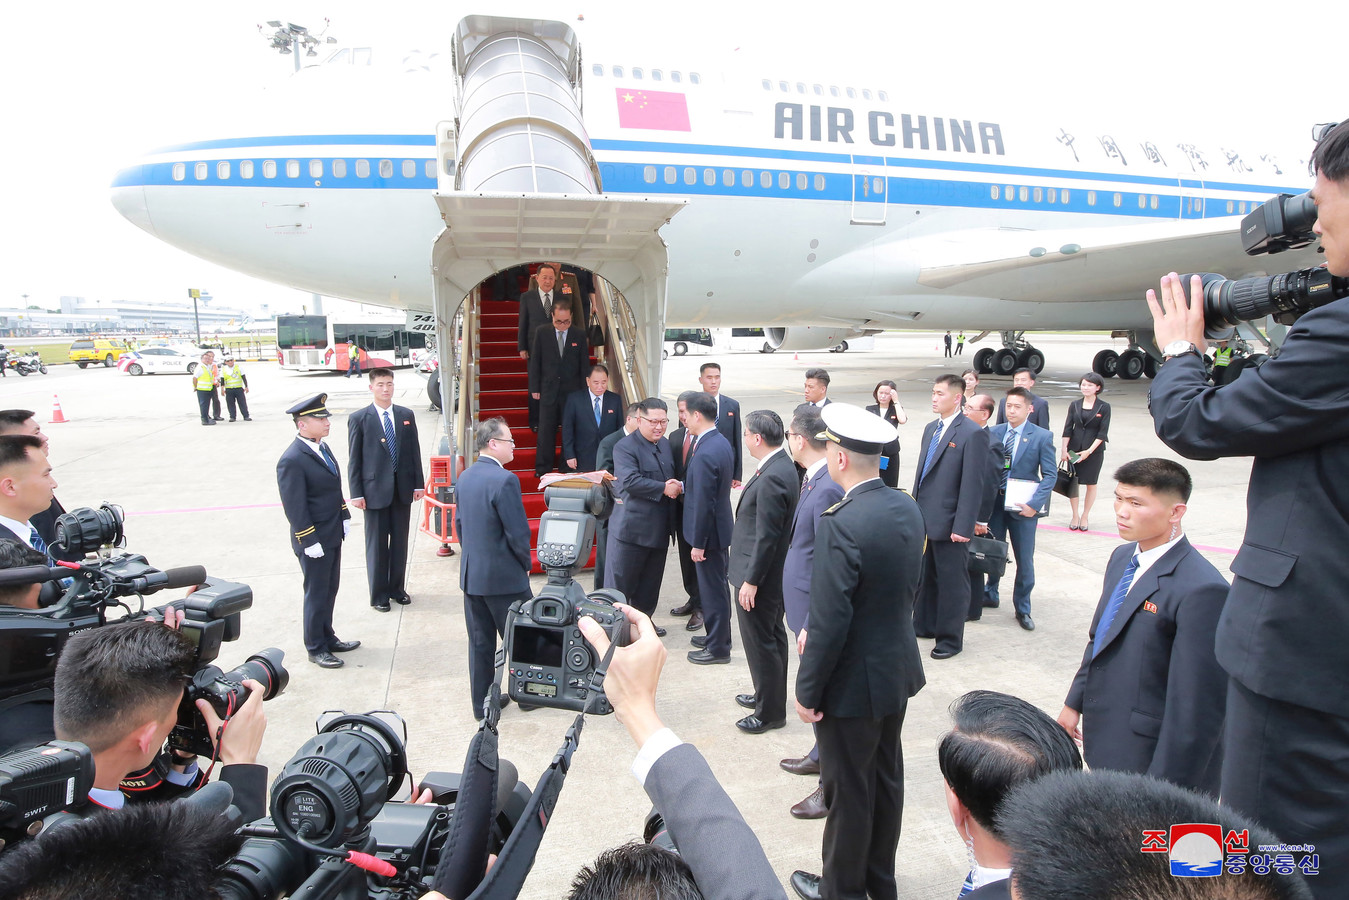 Kim arriveerde verrassend met een lijnvlucht van Air China.